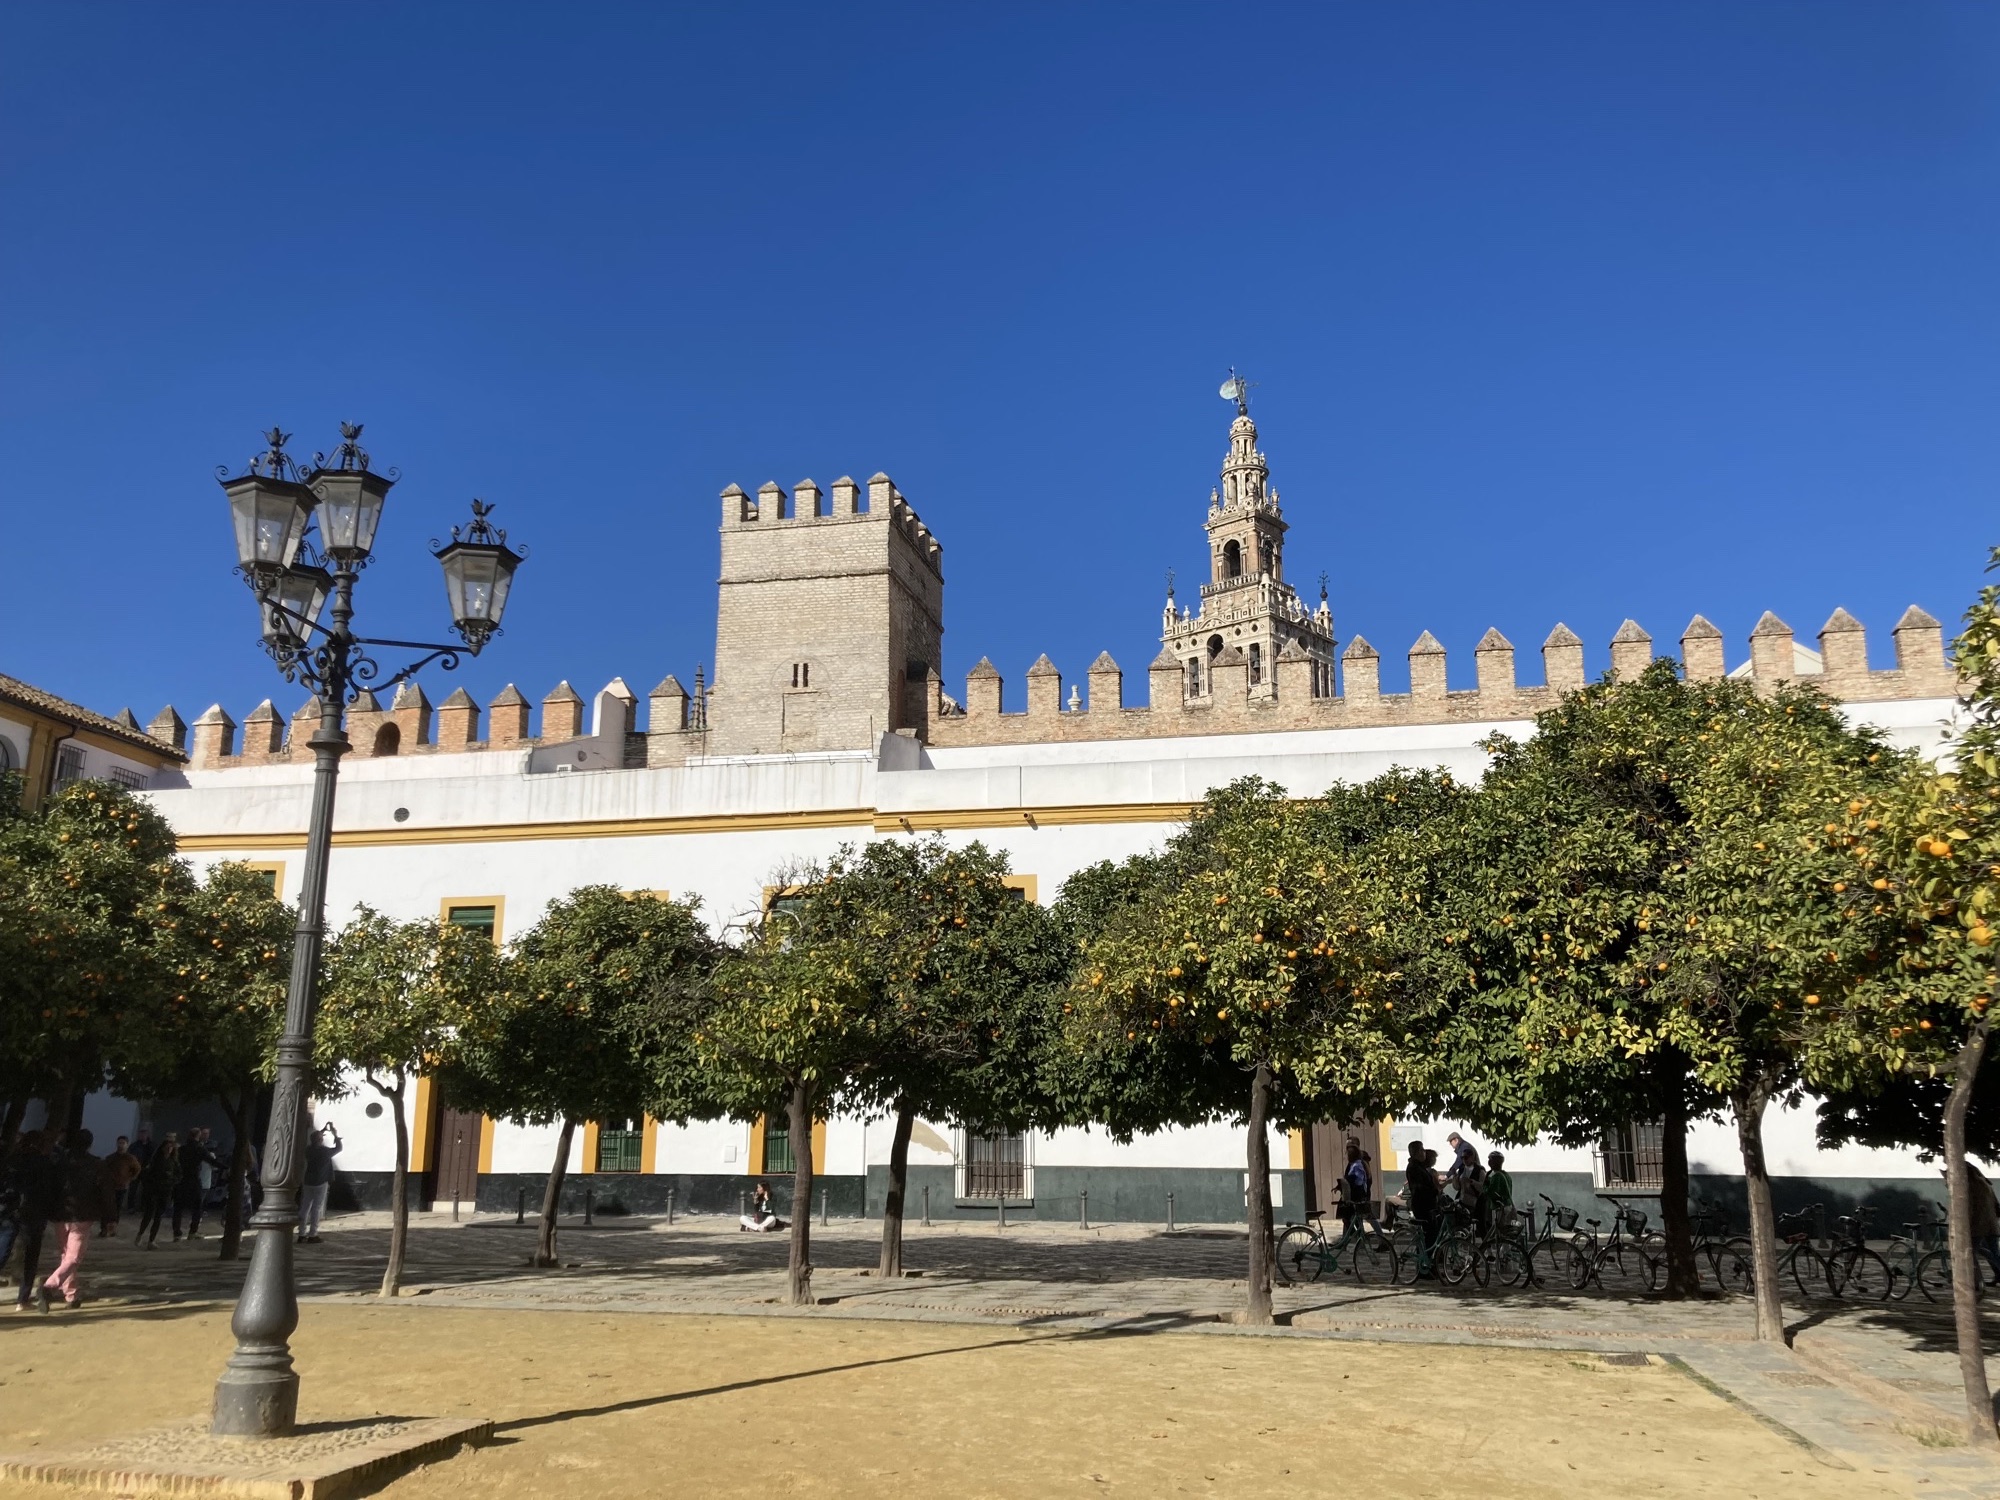 Orangenhof des Alcázar von Sevilla, im Vordergrund eine vierköpfige Lampe und mehrere Orangenbäume, dahinter die Mauern des Alcázars, geschmückt mit Rauchfang-ähnlichen Spitzen, dahinter ragt der Glockenturm Giralda über die Mauer hinaus